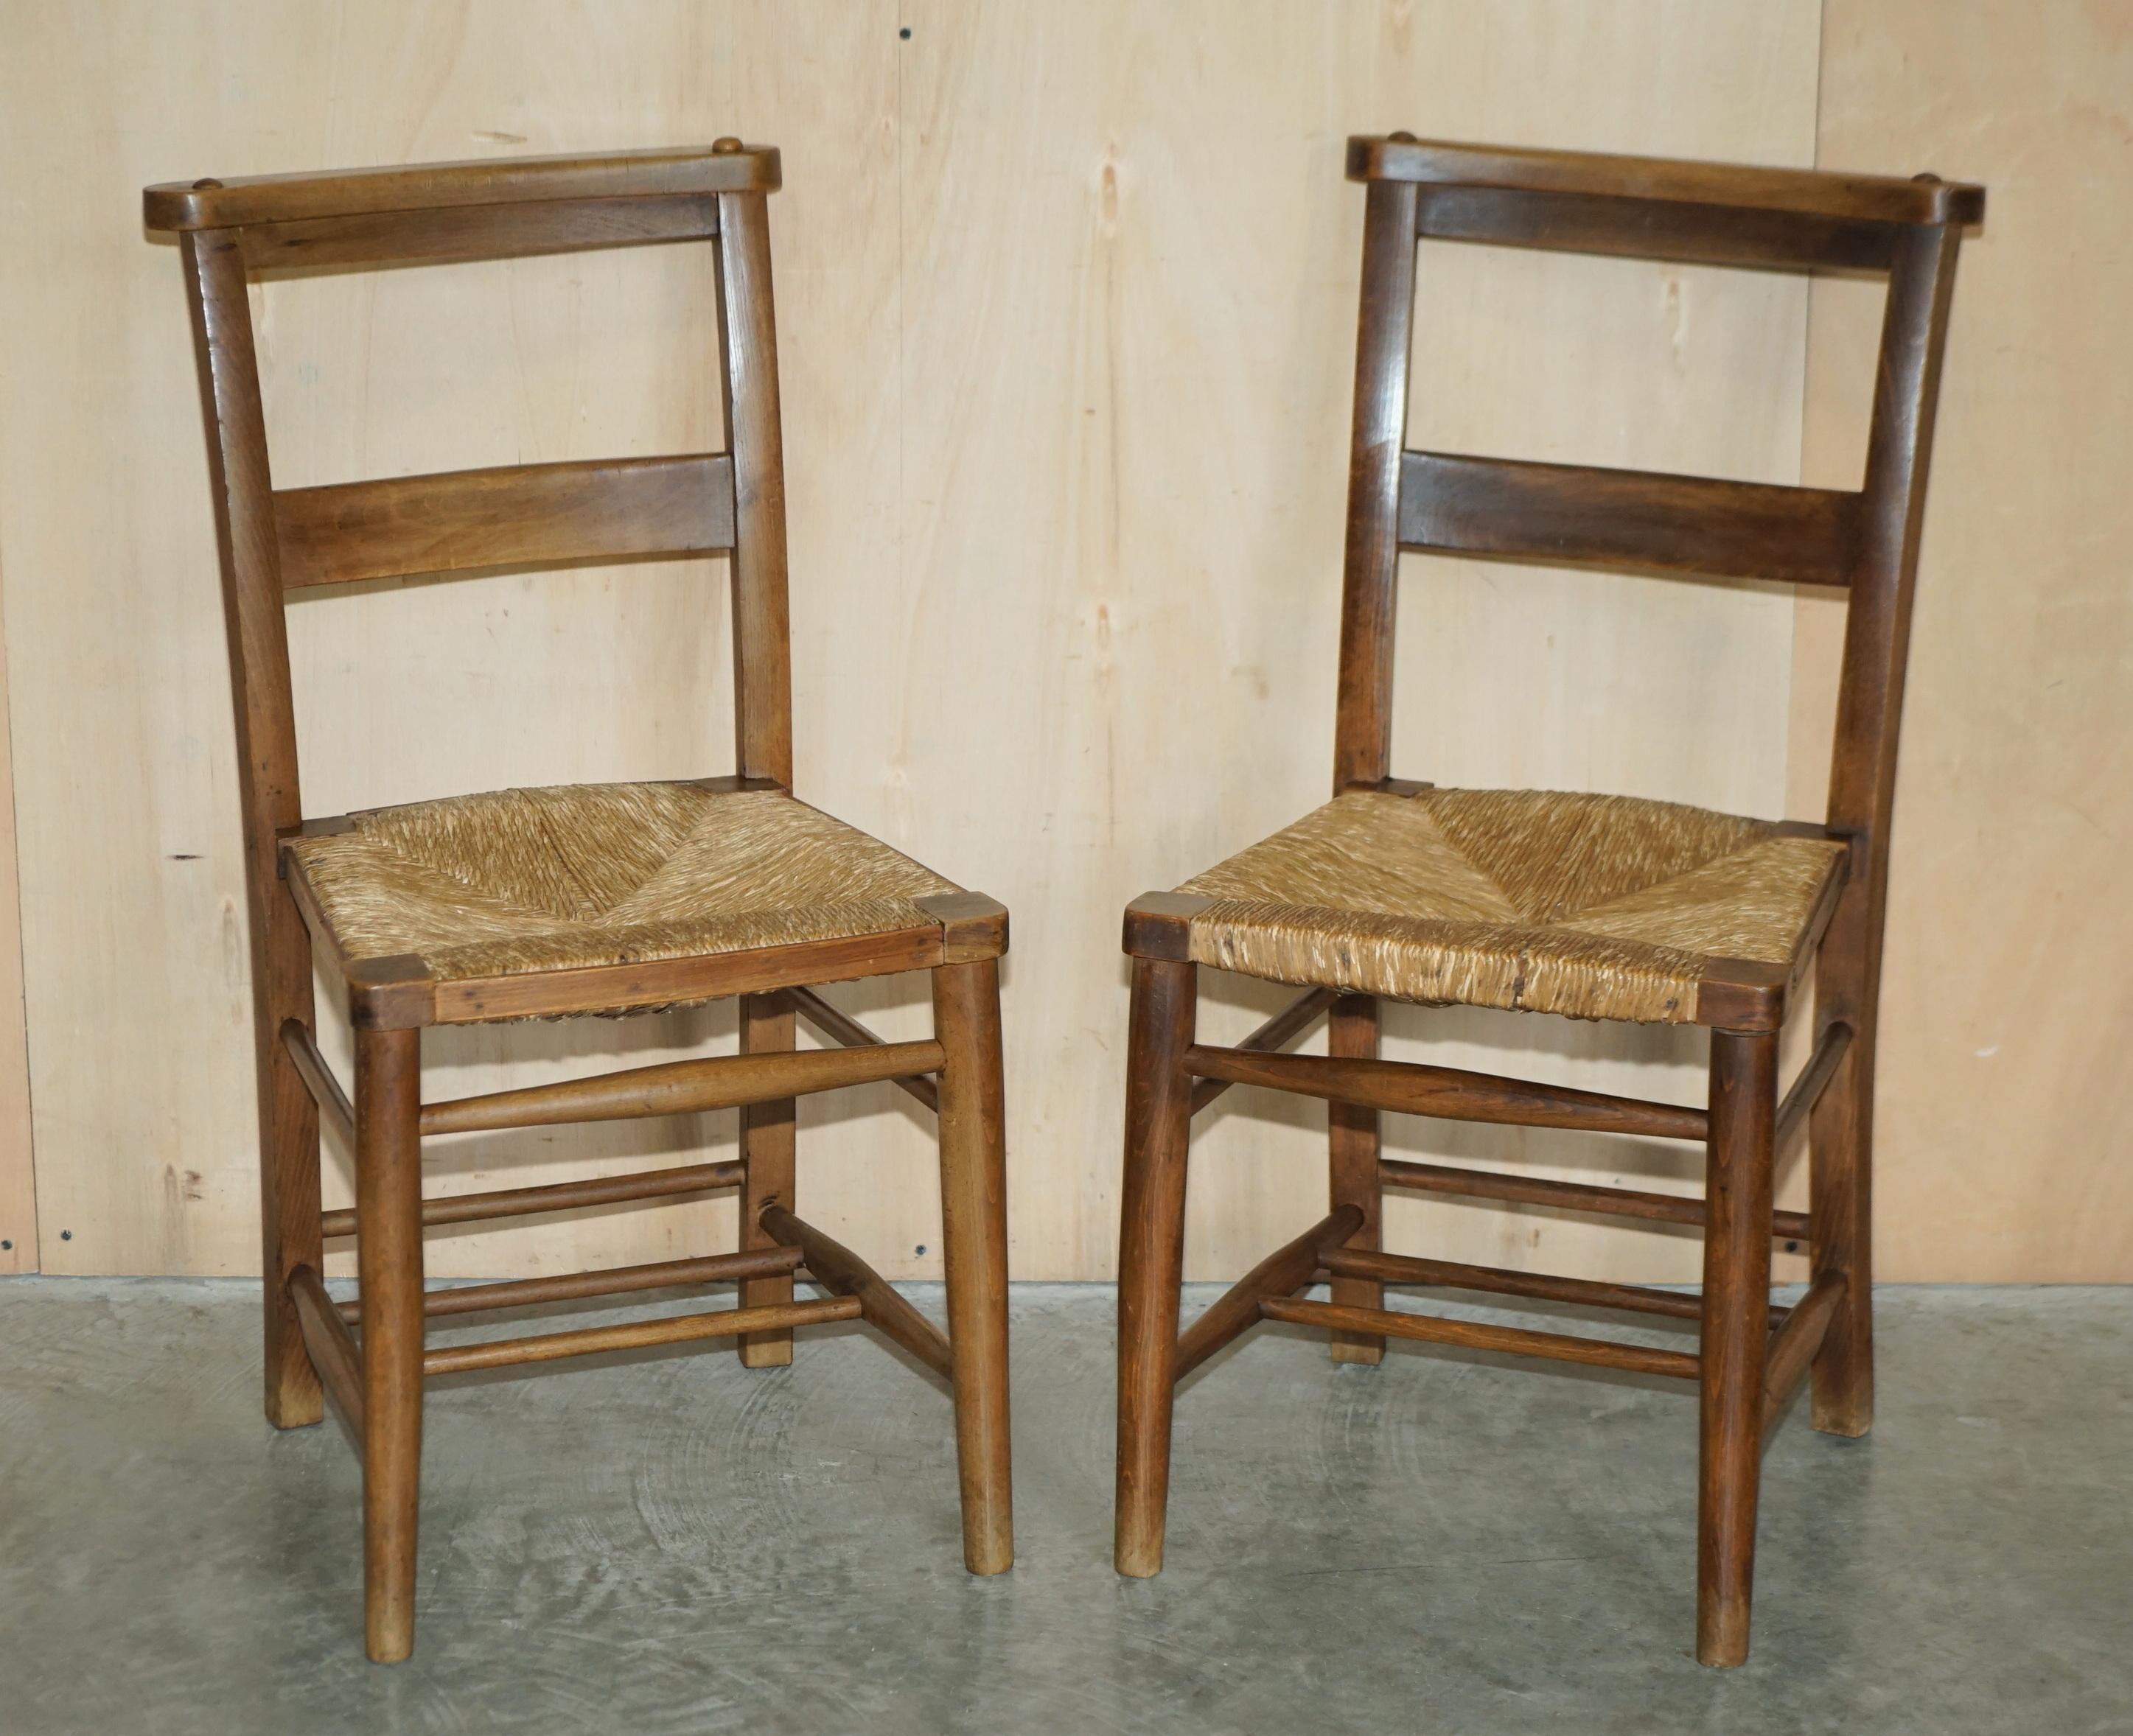 Wir freuen uns, diese schöne Suite von sechs original niederländischen ca. 1860 Leiter zurück Binsen Sitz Esszimmerstühle zum Verkauf anbieten.

Eine sehr gut aussehende und gut gemachte Sitzgruppe, das Holz ist ganz aus massiver Eiche, die Sitze